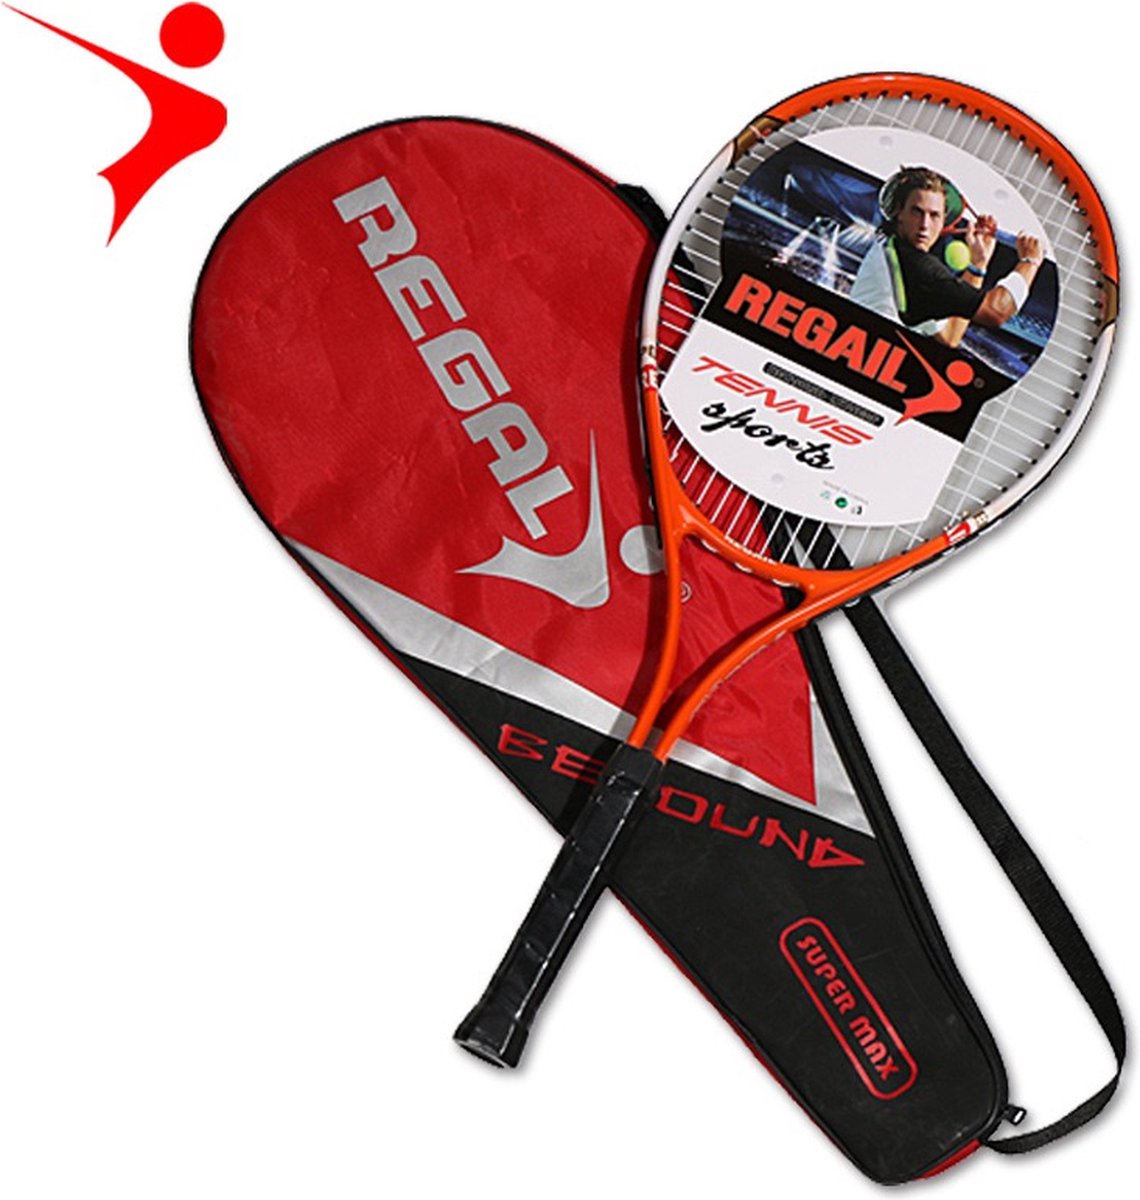 REGAIL Tennisracket - Tennisracket - Tennis - Voor beginners - Rood